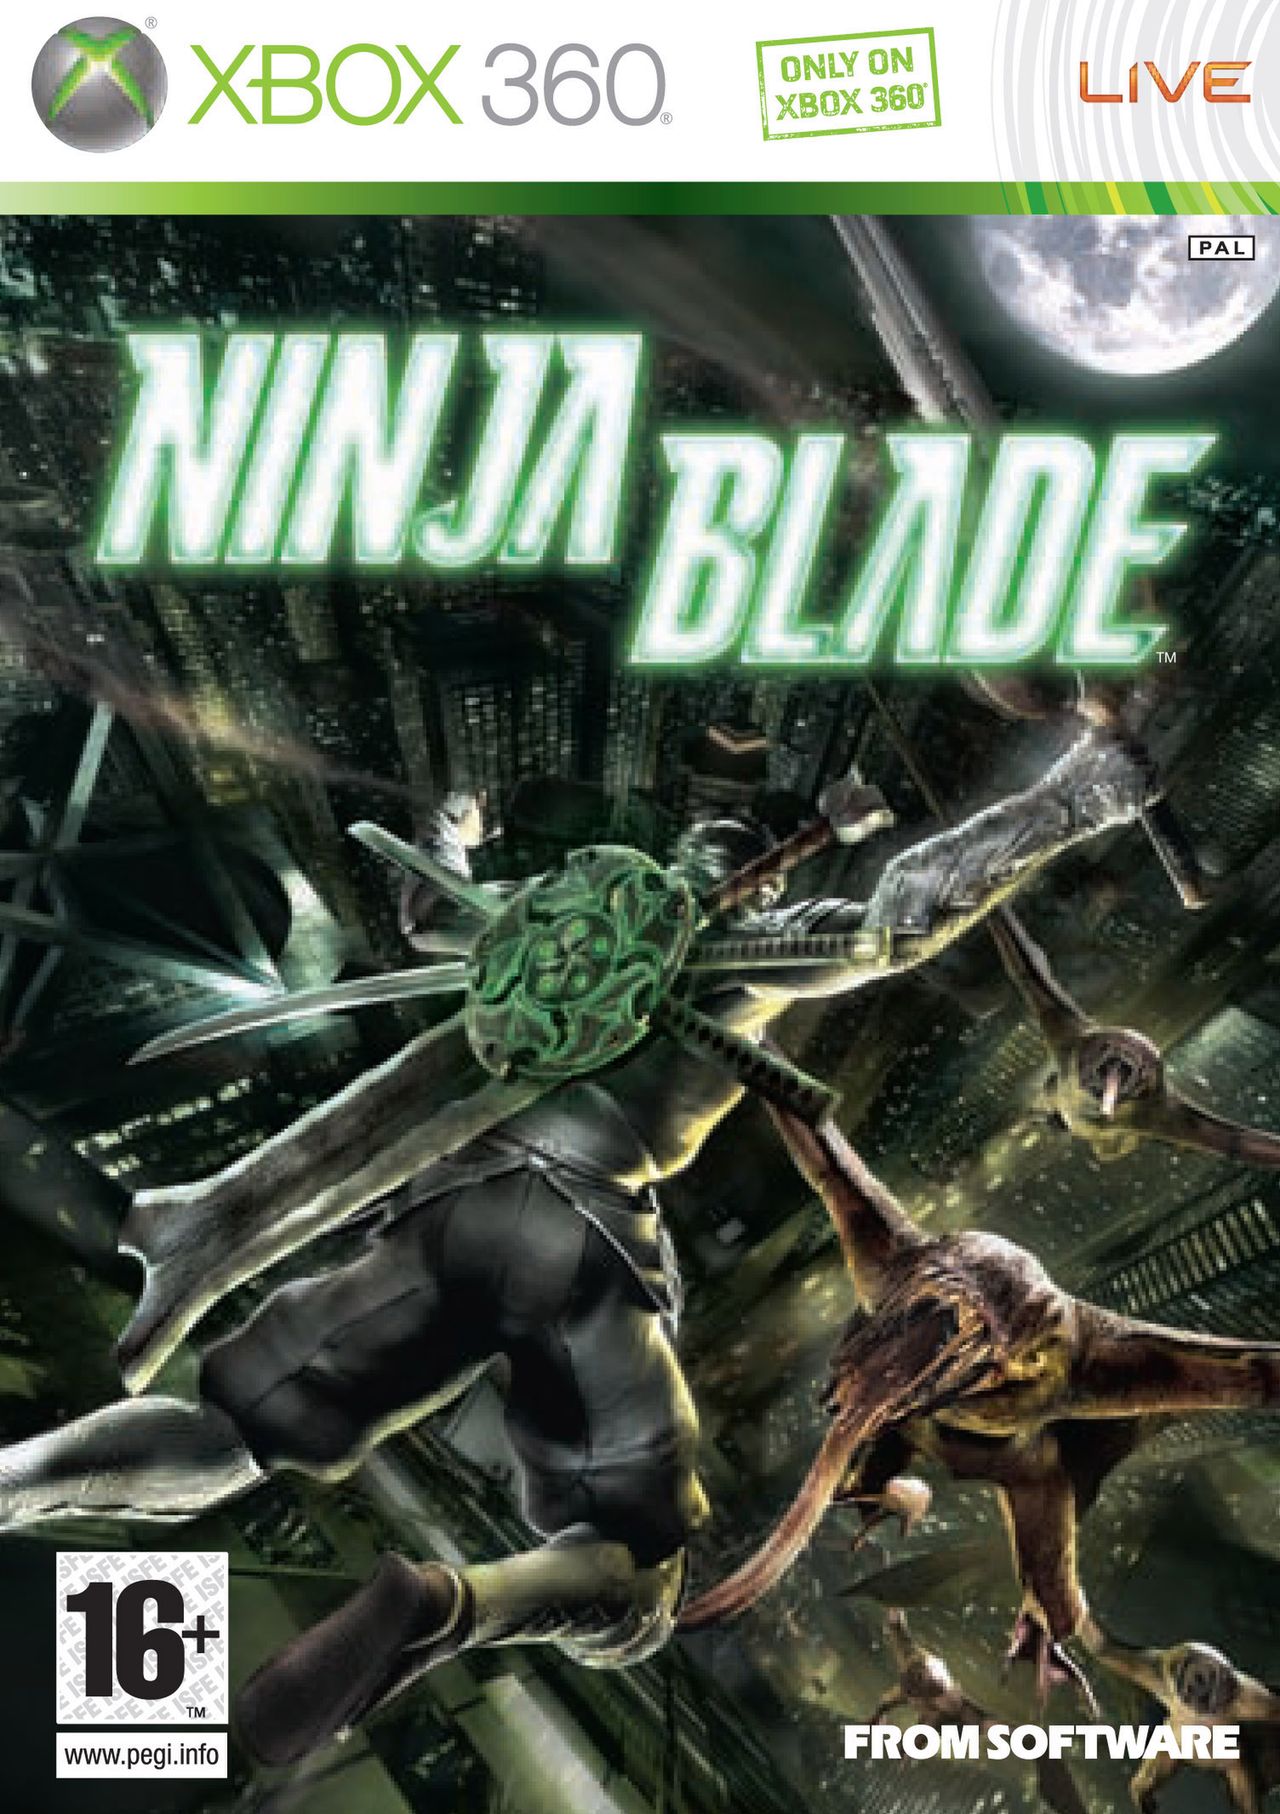 Okładka i pierwsza ocena Ninja Blade